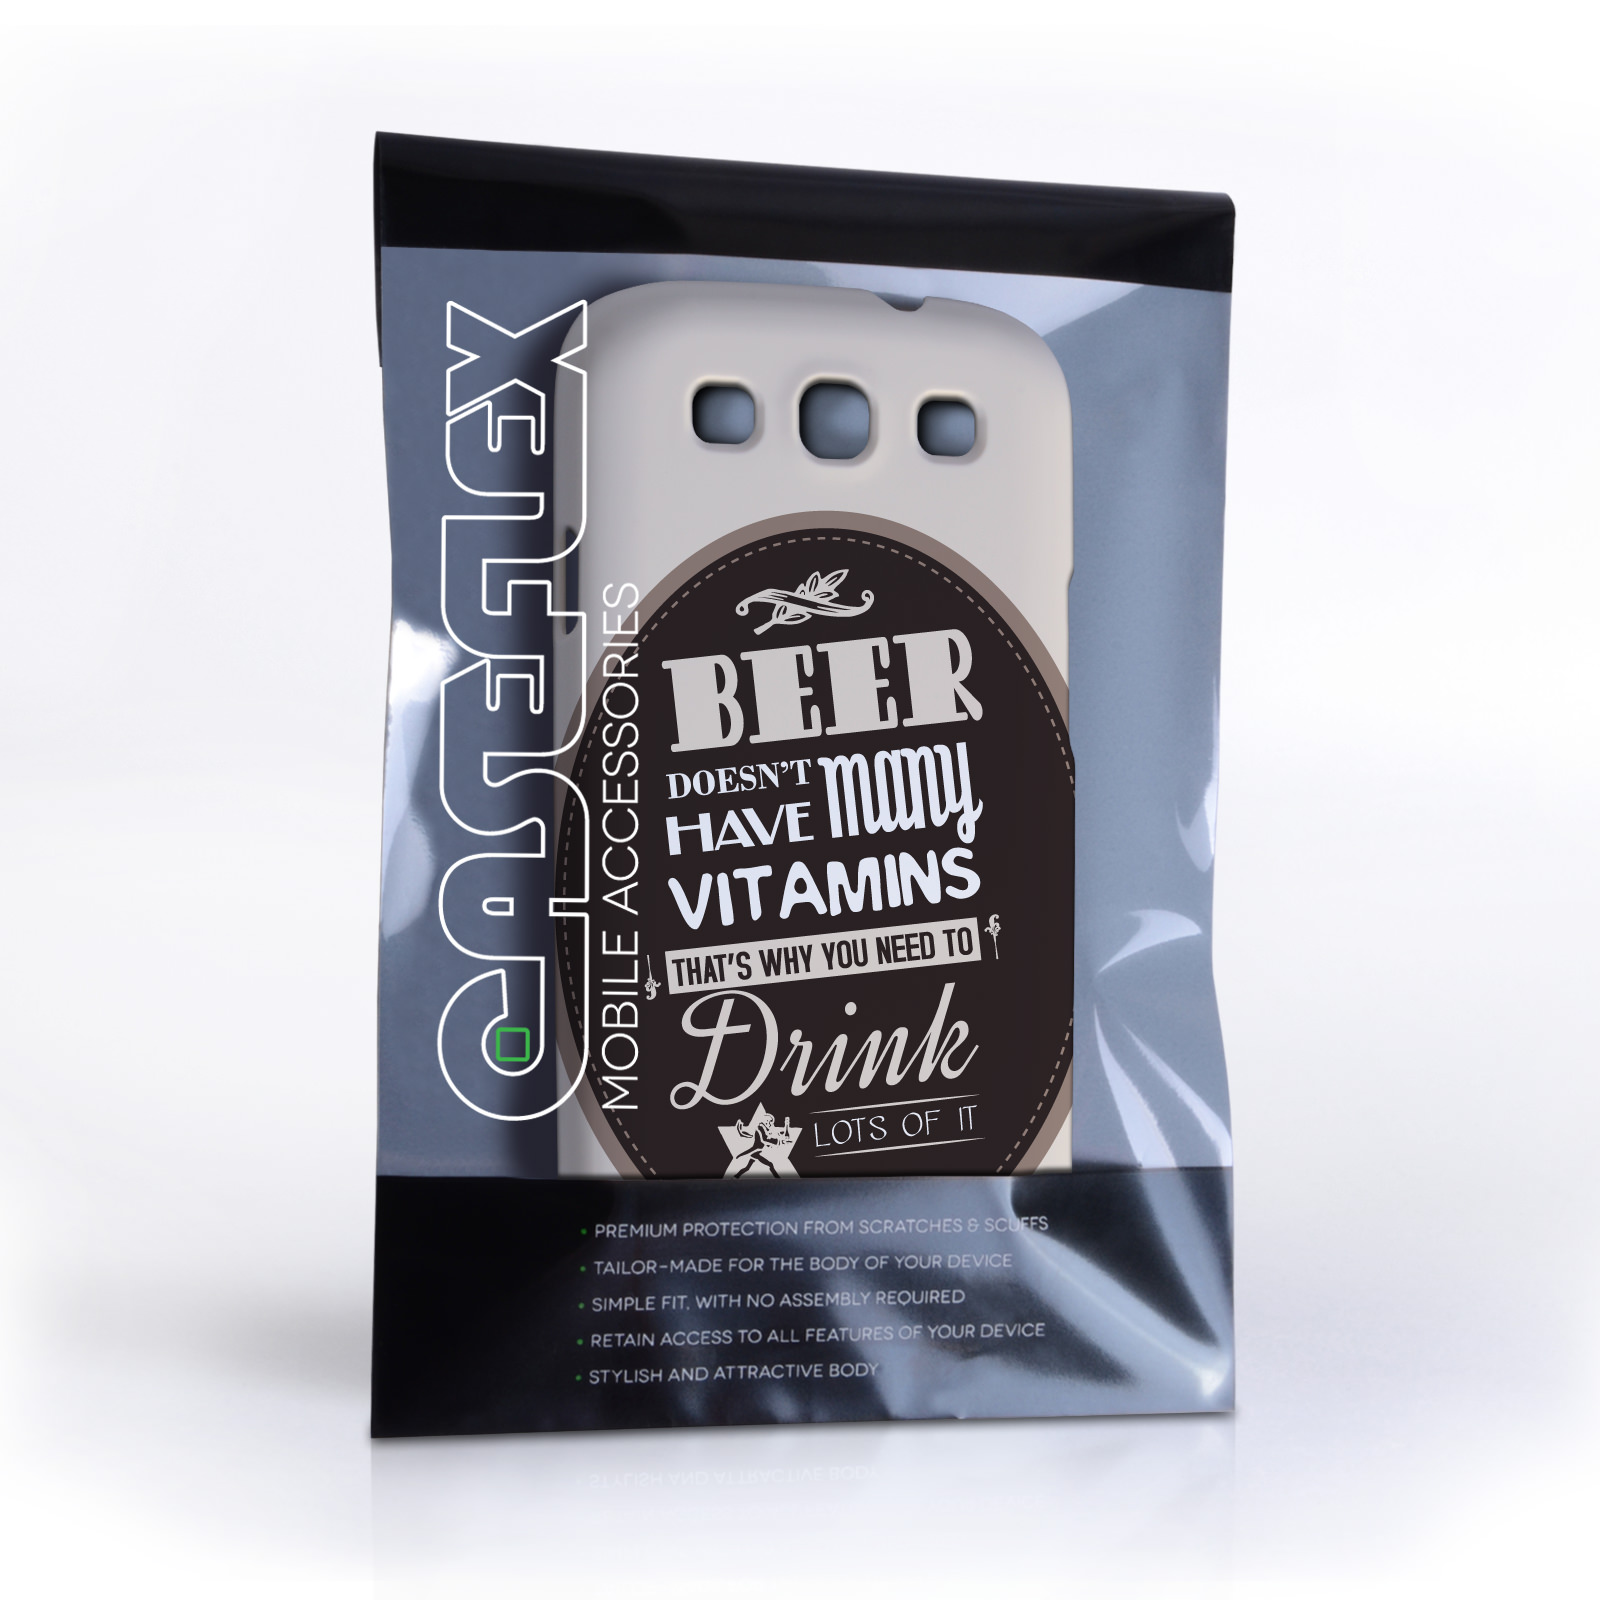 Caseflex Samsung Galaxy S3 Beer Label Quote Hard Case – Brown